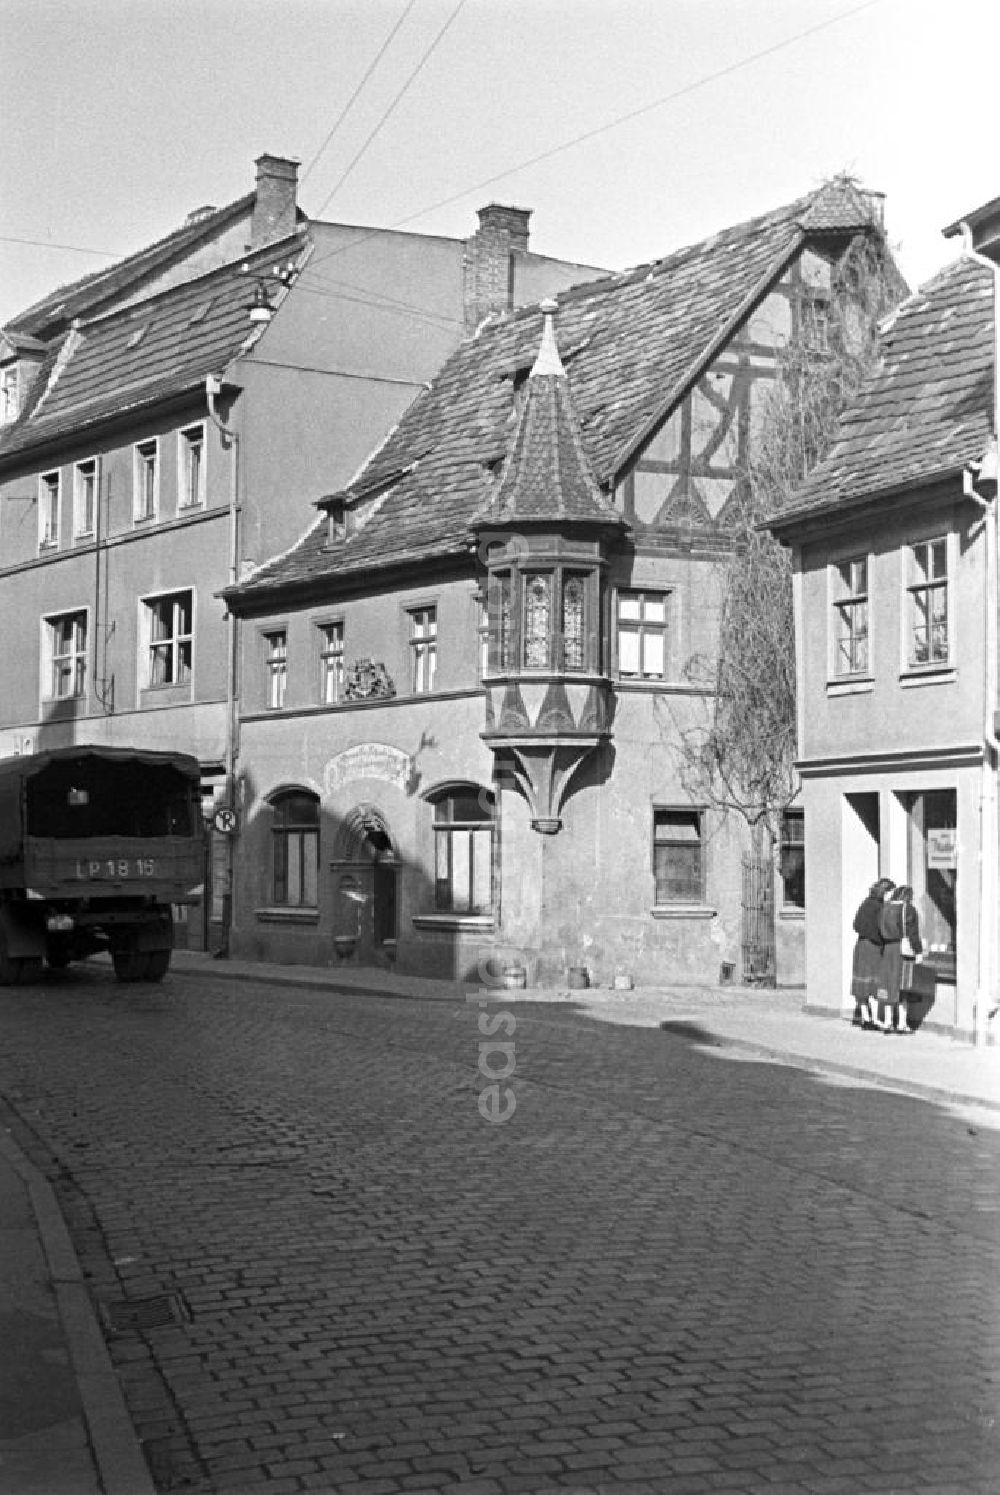 Weimar: Alltagsszene in Weimar. LKW fährt auf Straße (Kopfsteinpflaster) vorbei an Wohnhäuser / Altbauten. Zwei Frauen stehen vor einen Schaufenster.